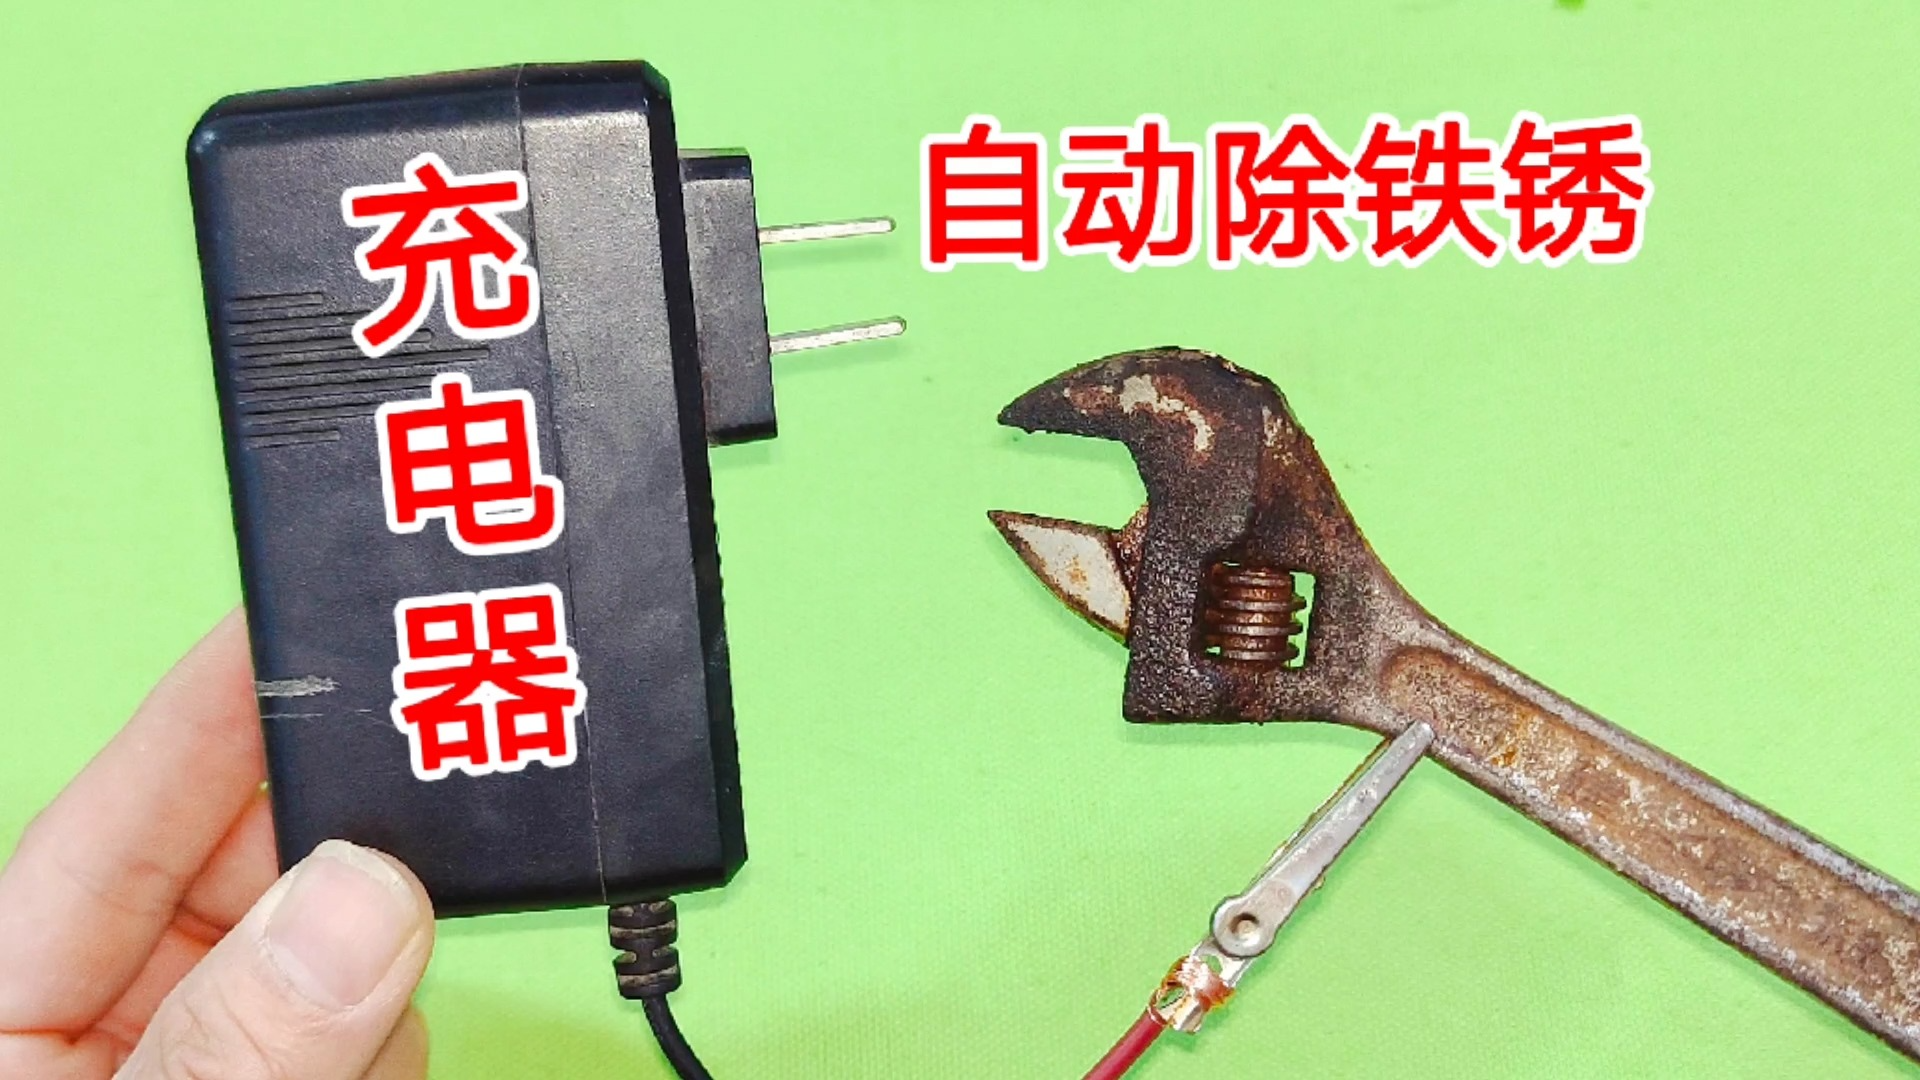 铁制品严重生锈先别扔，用一个手机充电器，就能让铁锈自动脱离